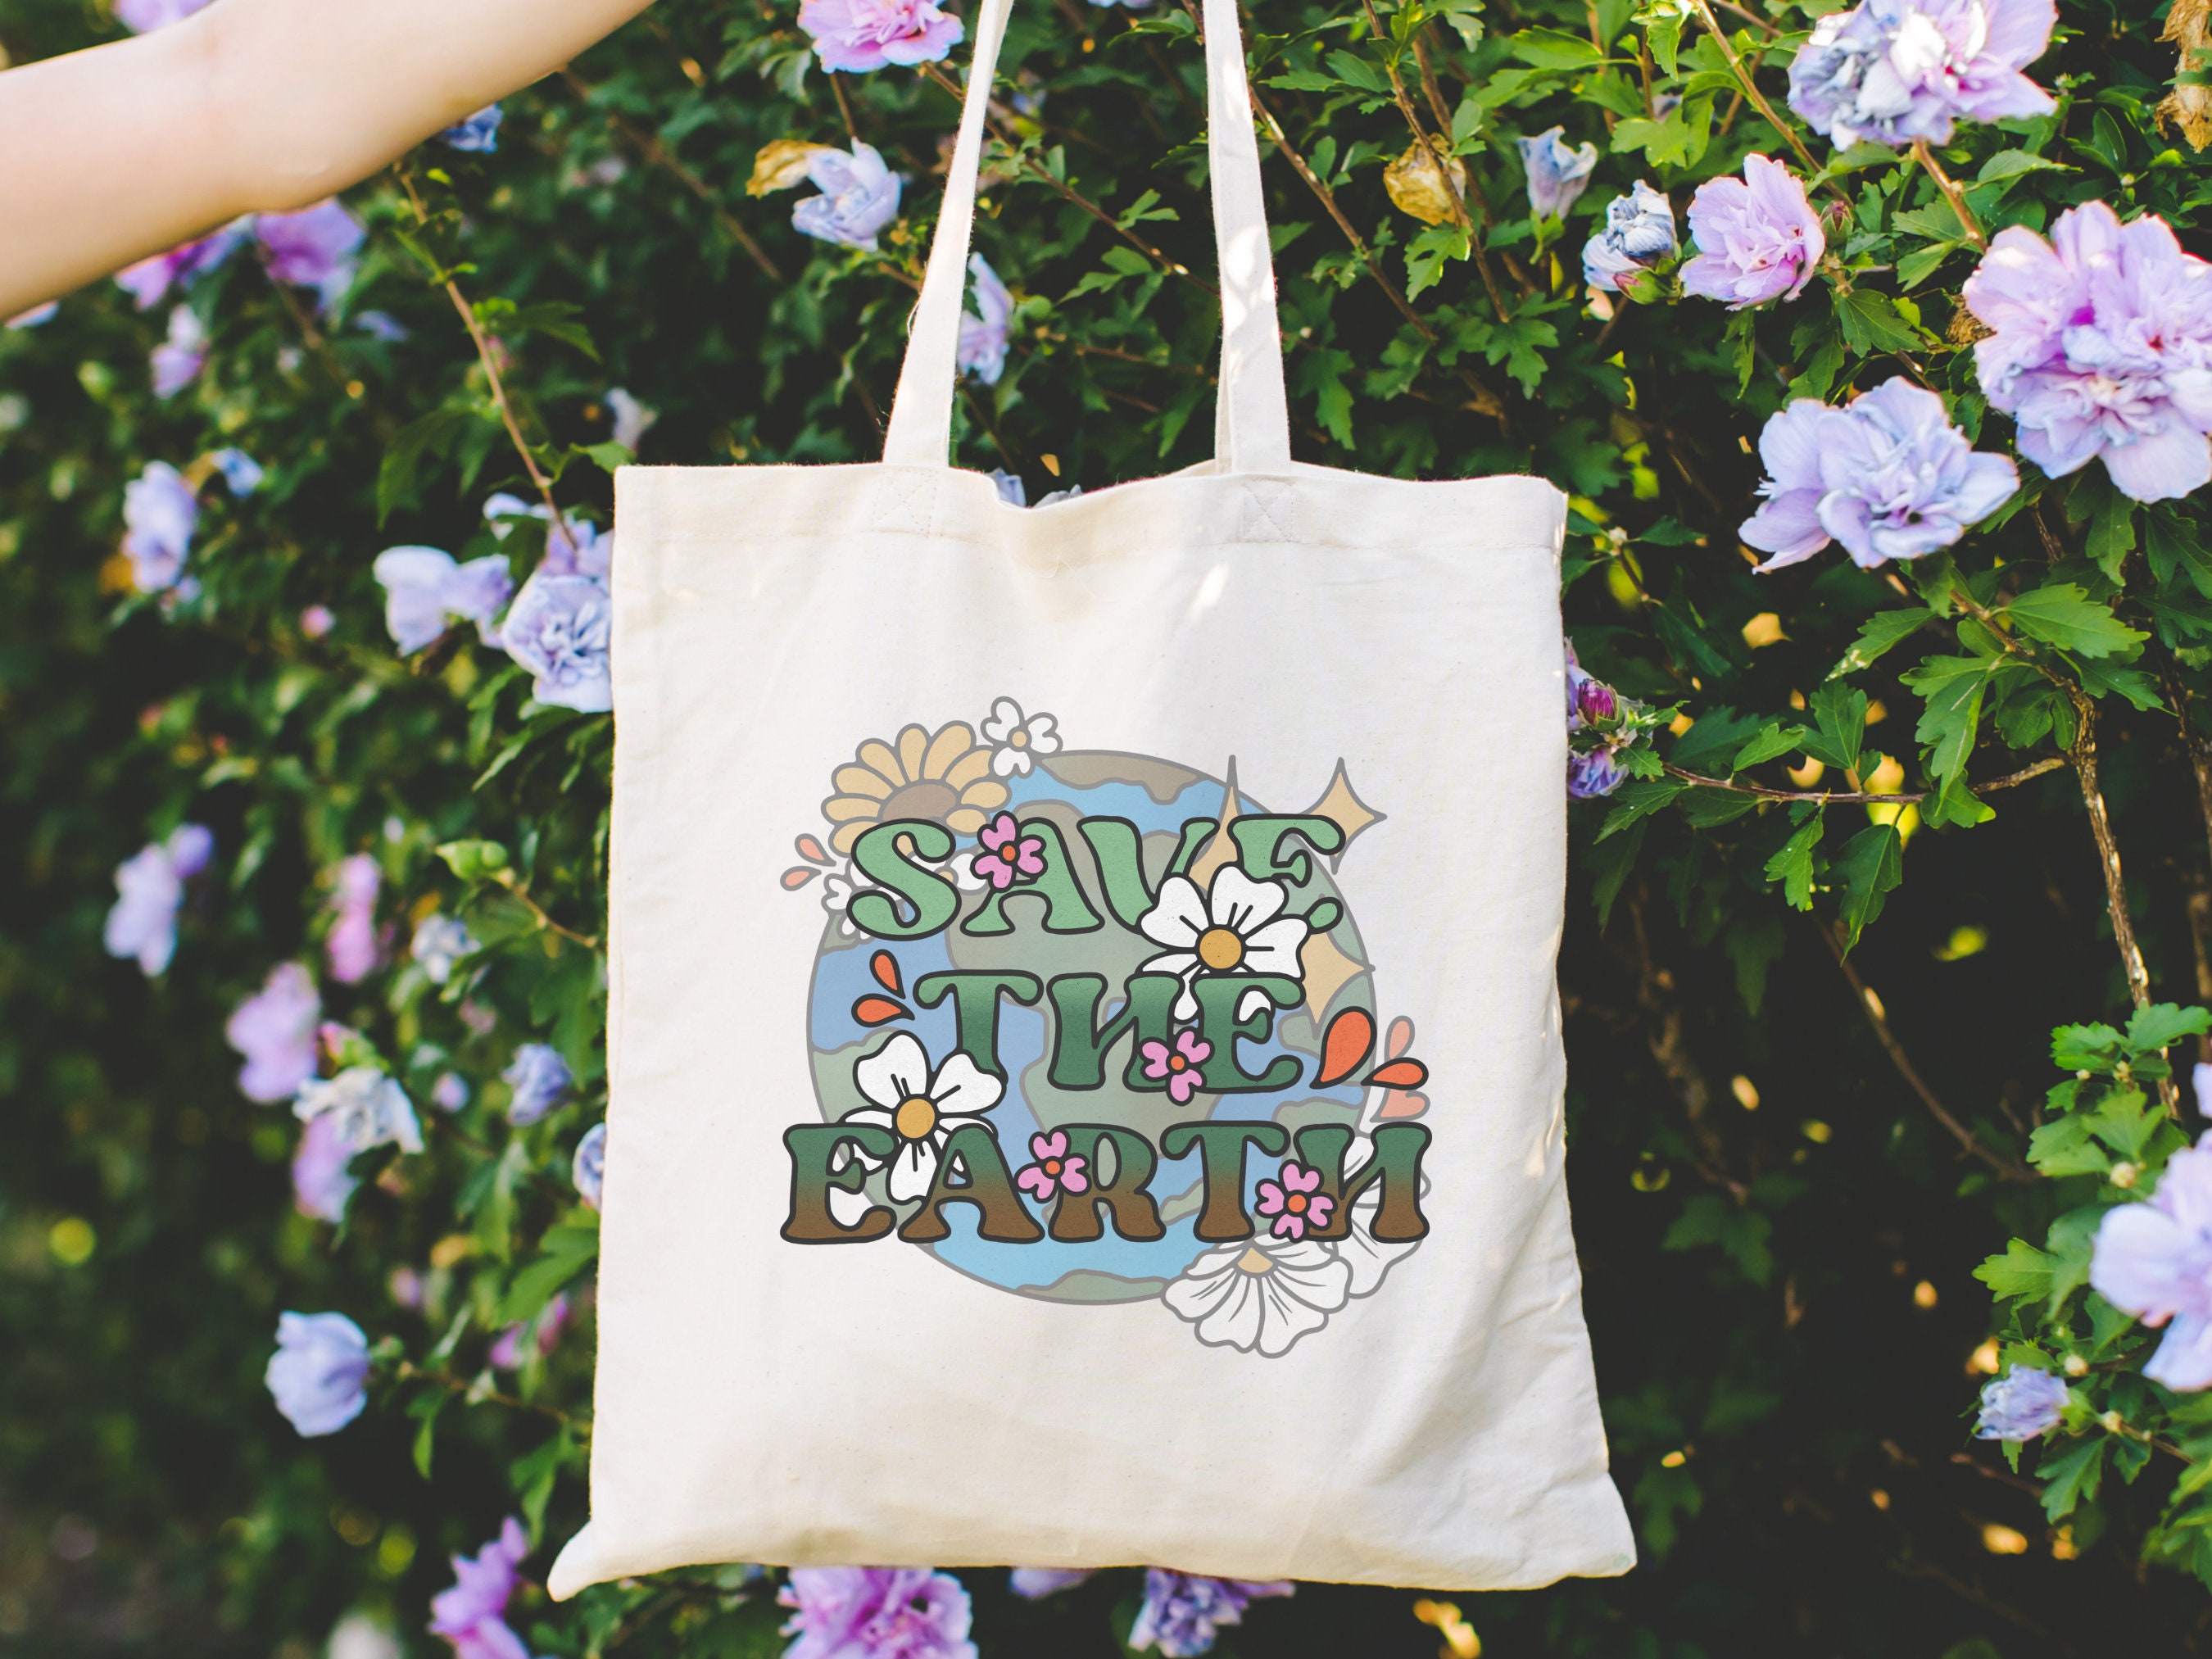 Earth Day Reusable Shopping Bags